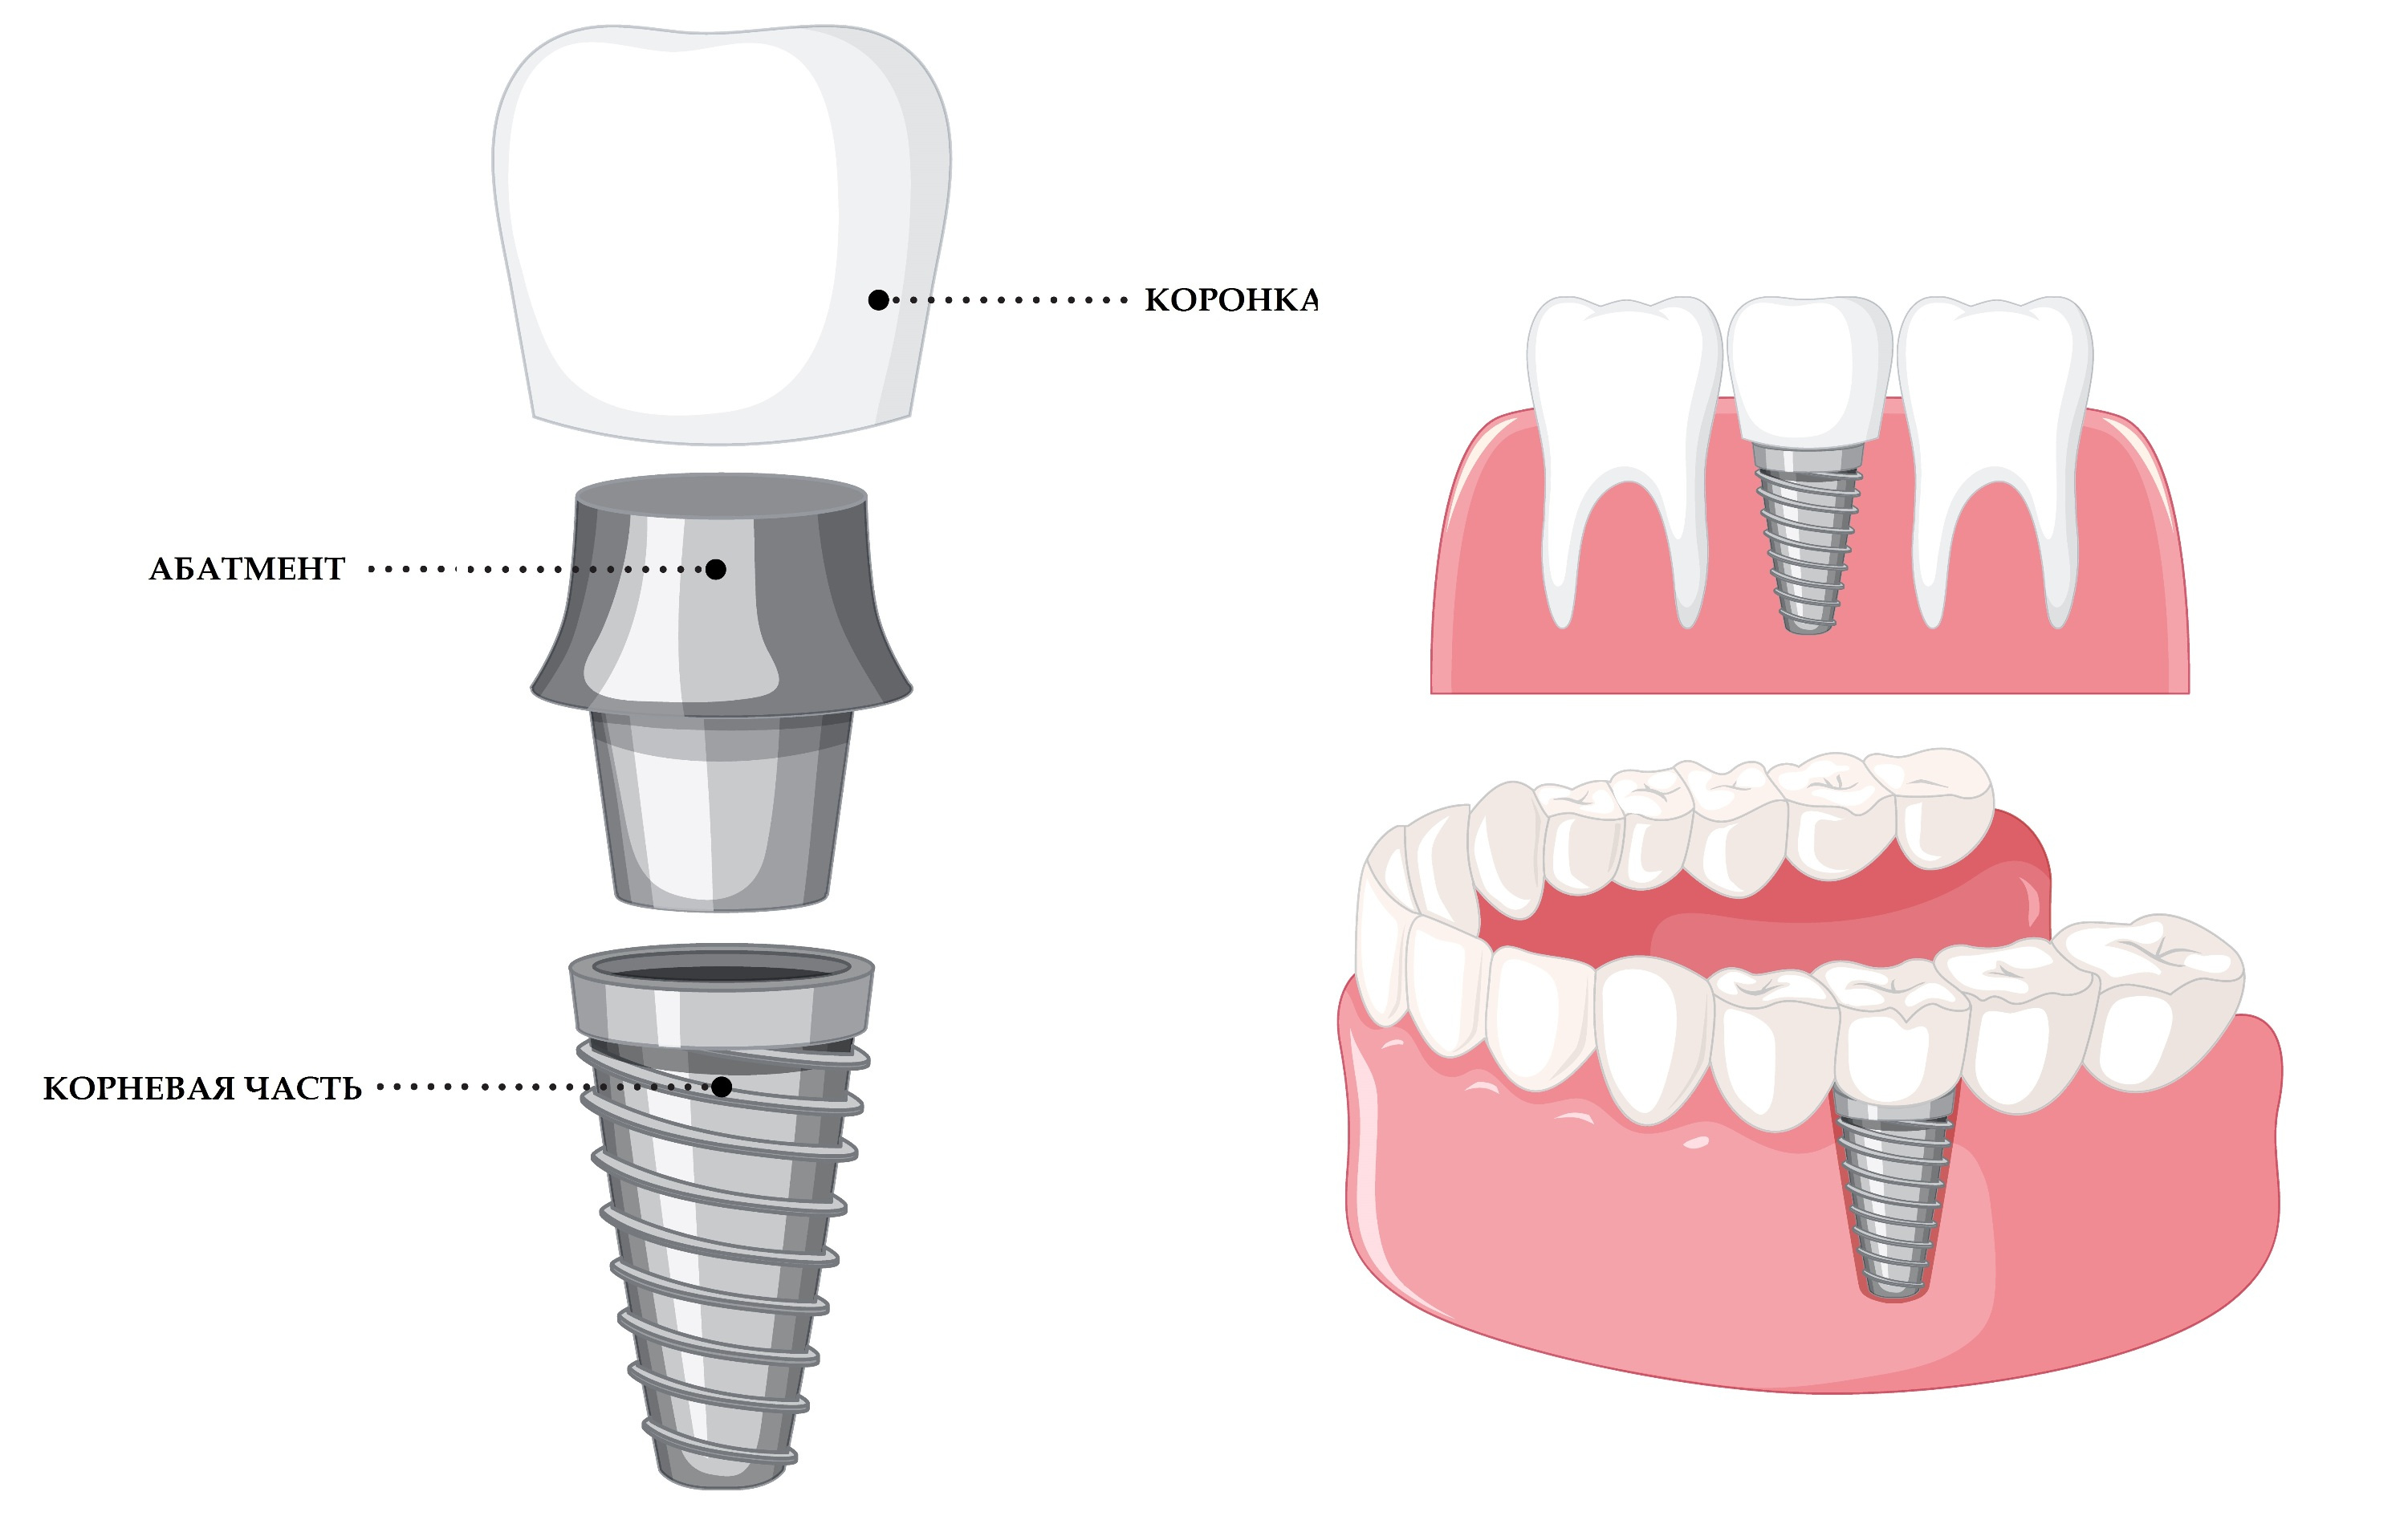 Зубной имплантат состоит из трех основных частей